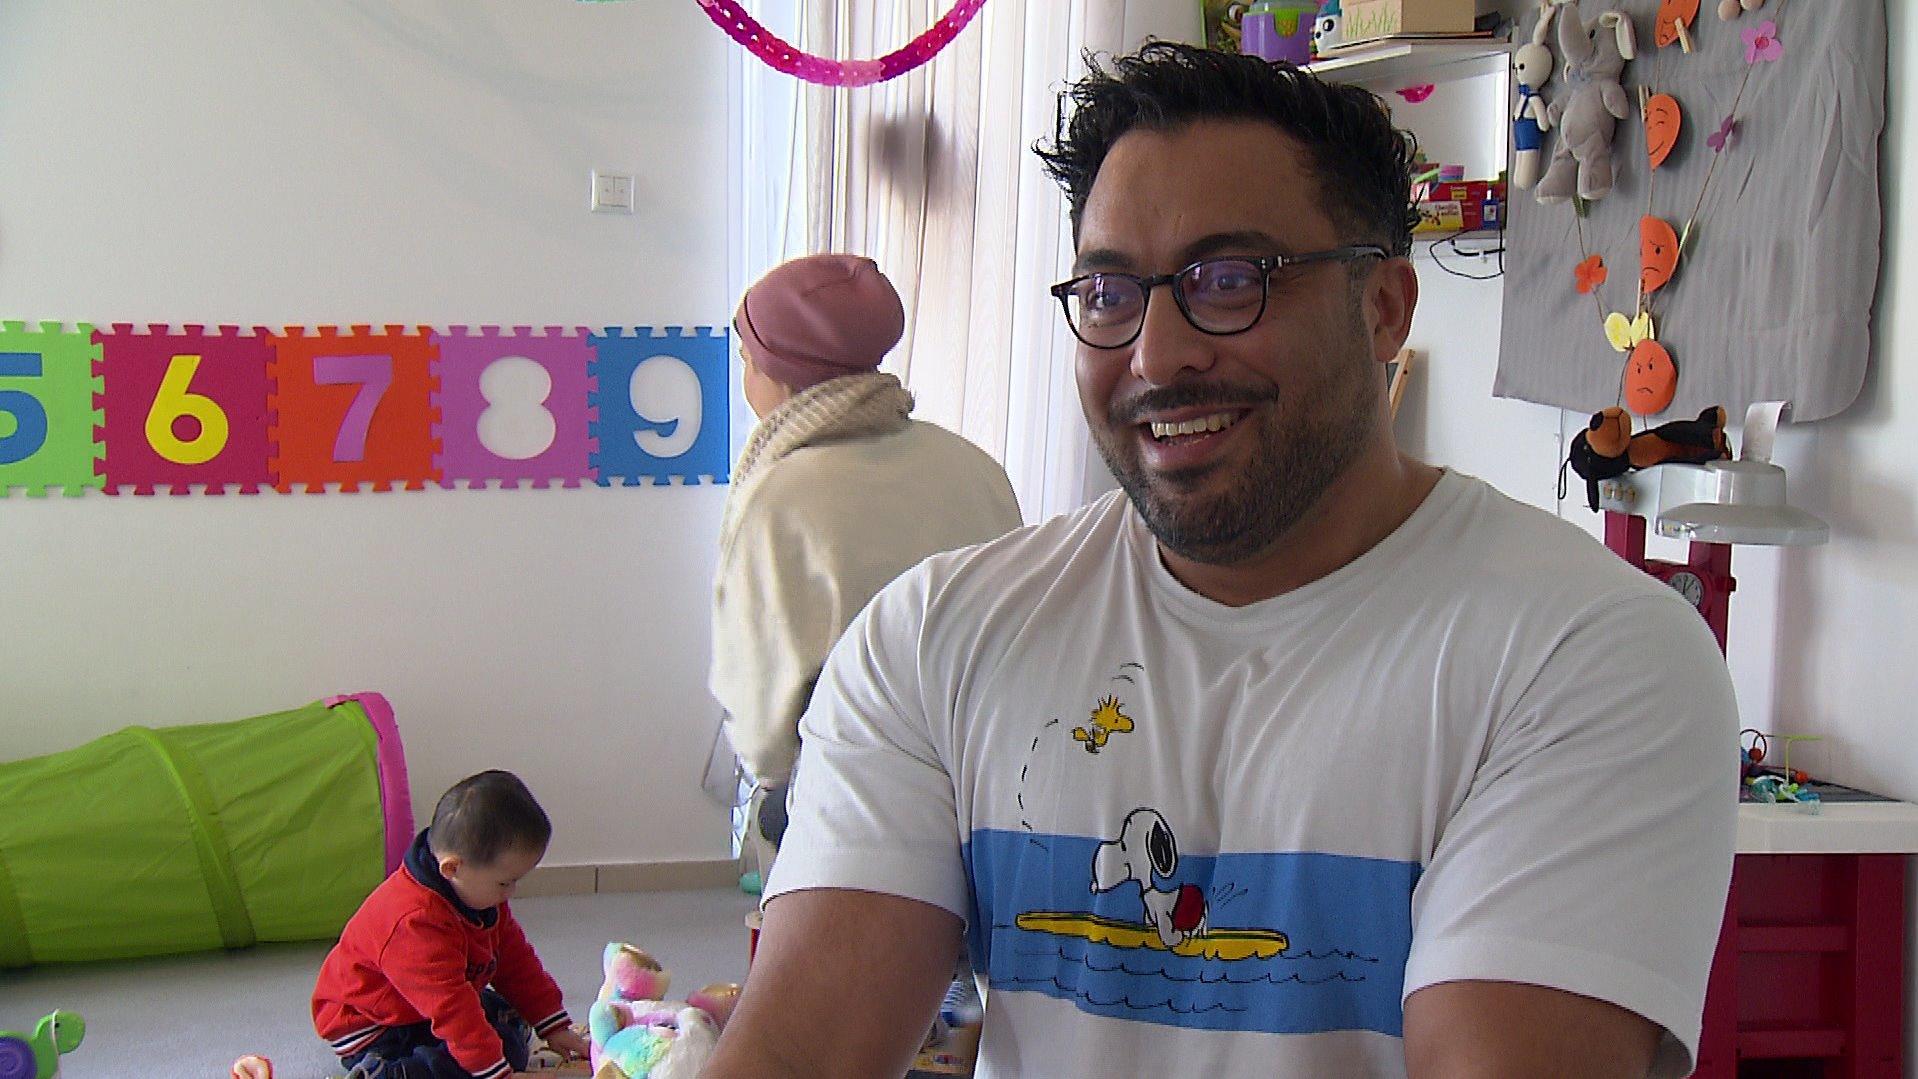 Die Arbeit zaubert ihm dieses Strahlen ins Gesicht: Peyman Bahrani liebt seinen Job als Tagesvater.